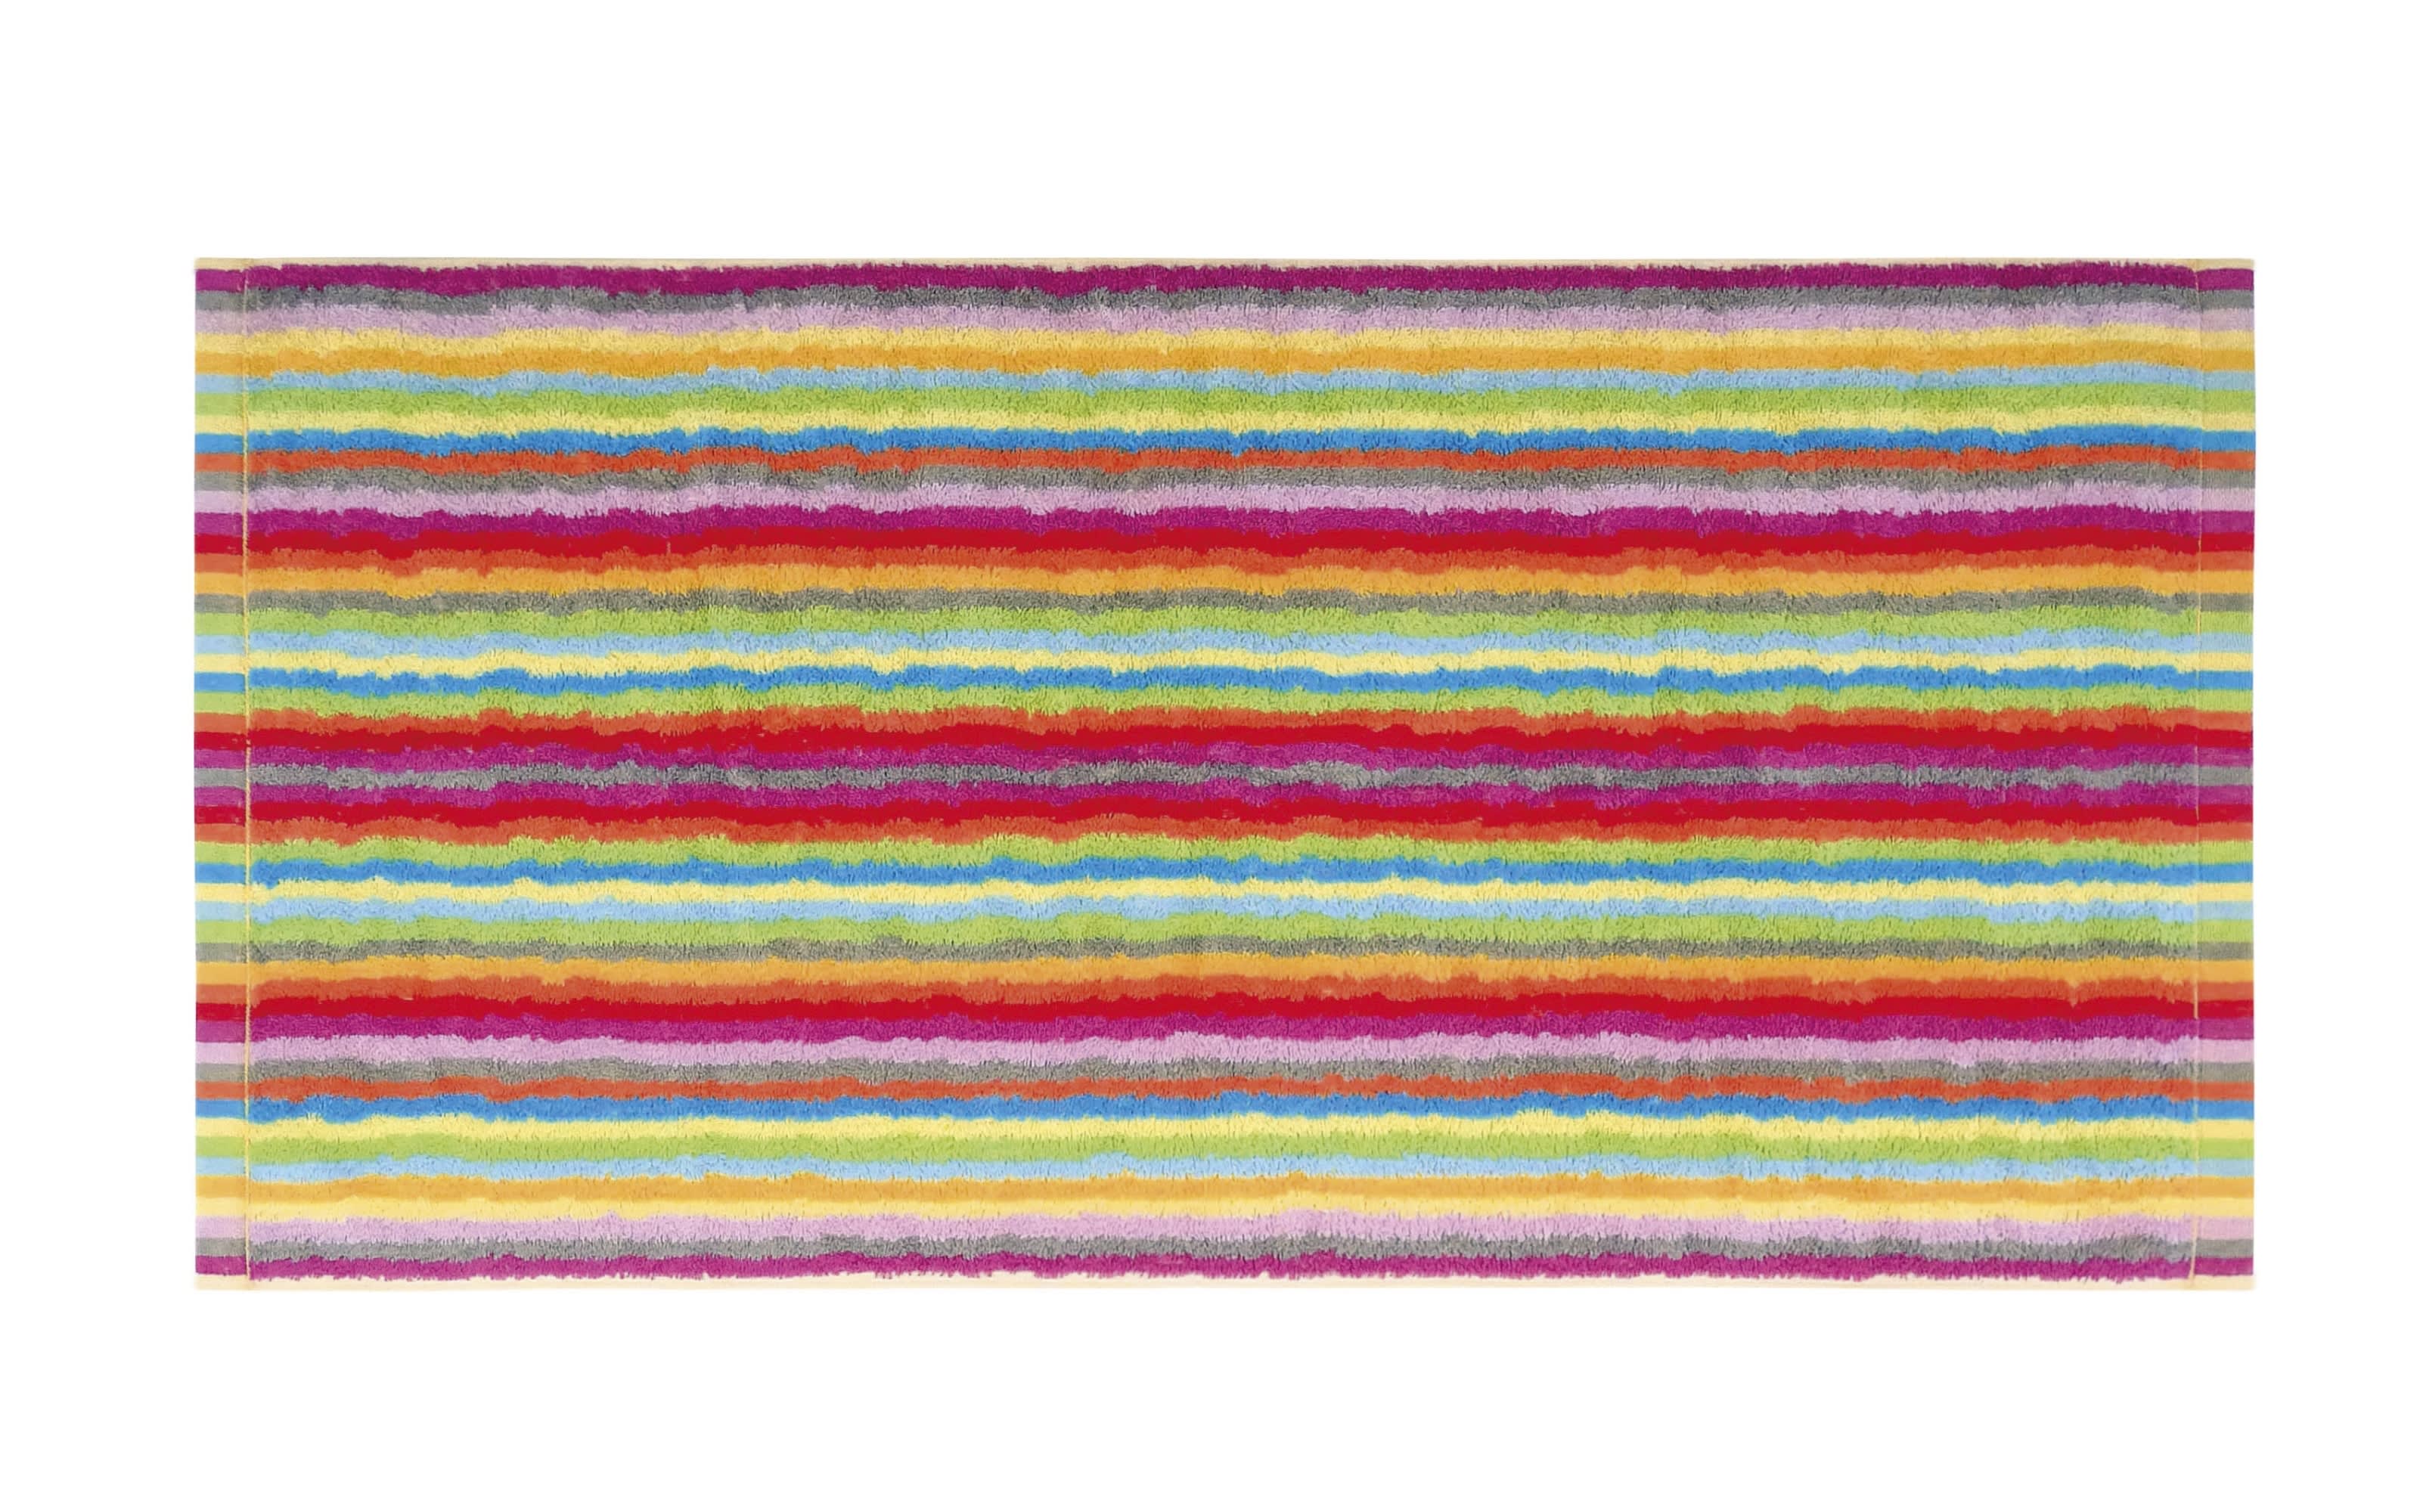 Gästetuch Lifestyle Streifen, multicolor hell, 30 x 50 cm